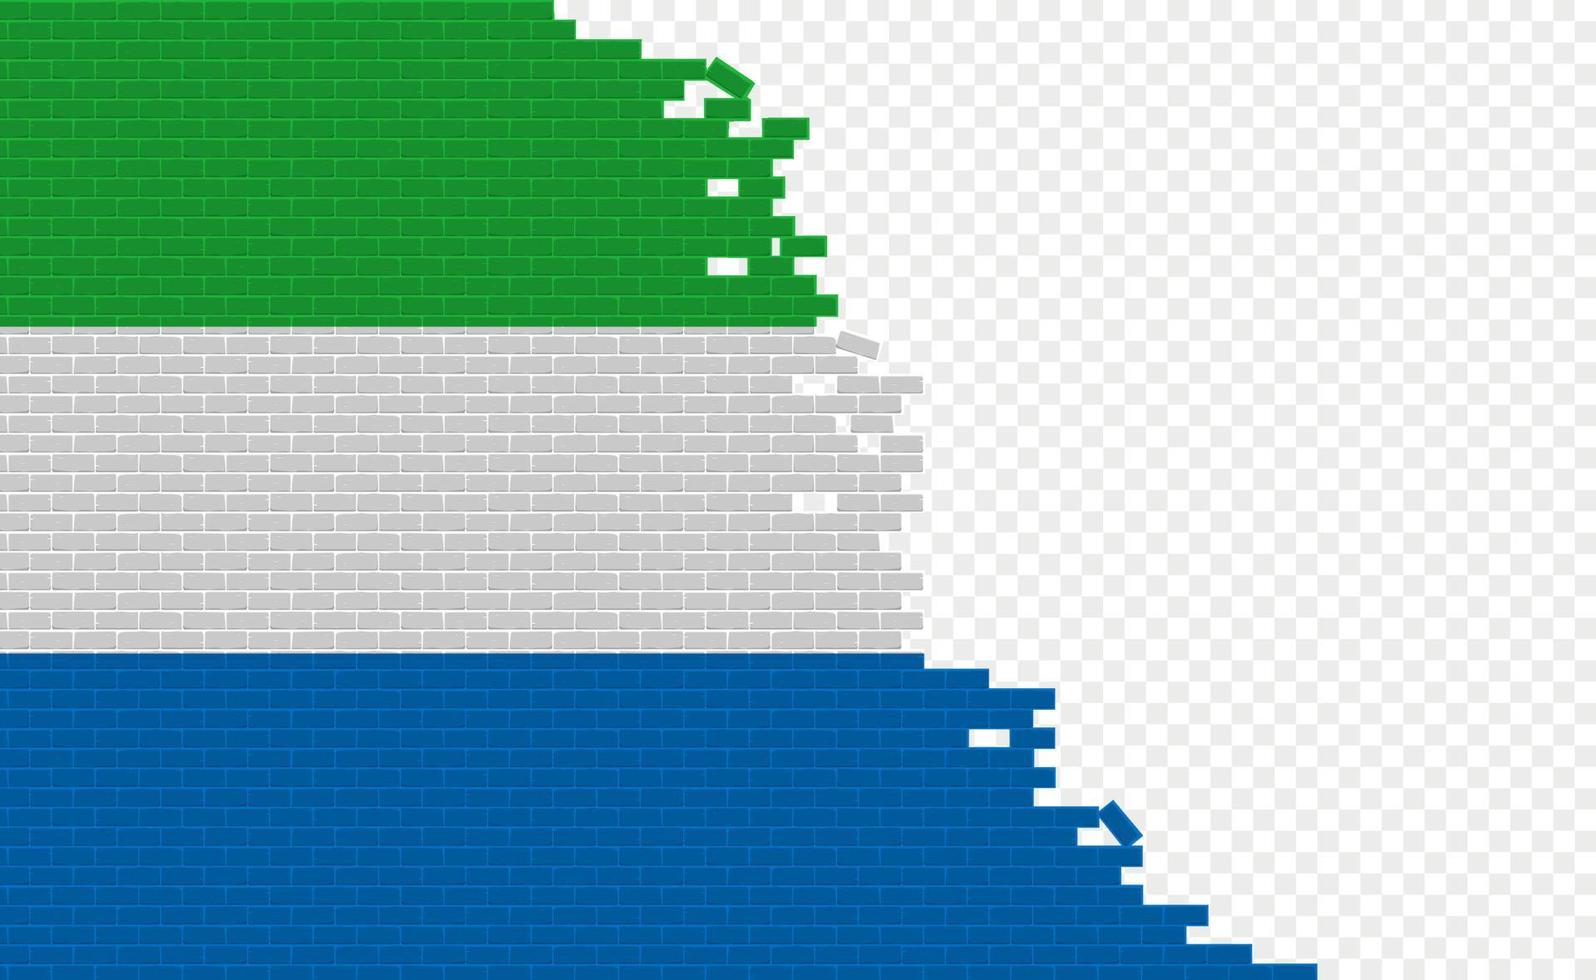 drapeau de la sierra leone sur le mur de briques cassées. champ de drapeau vide d'un autre pays. comparaison de pays. édition facile et vecteur en groupes.